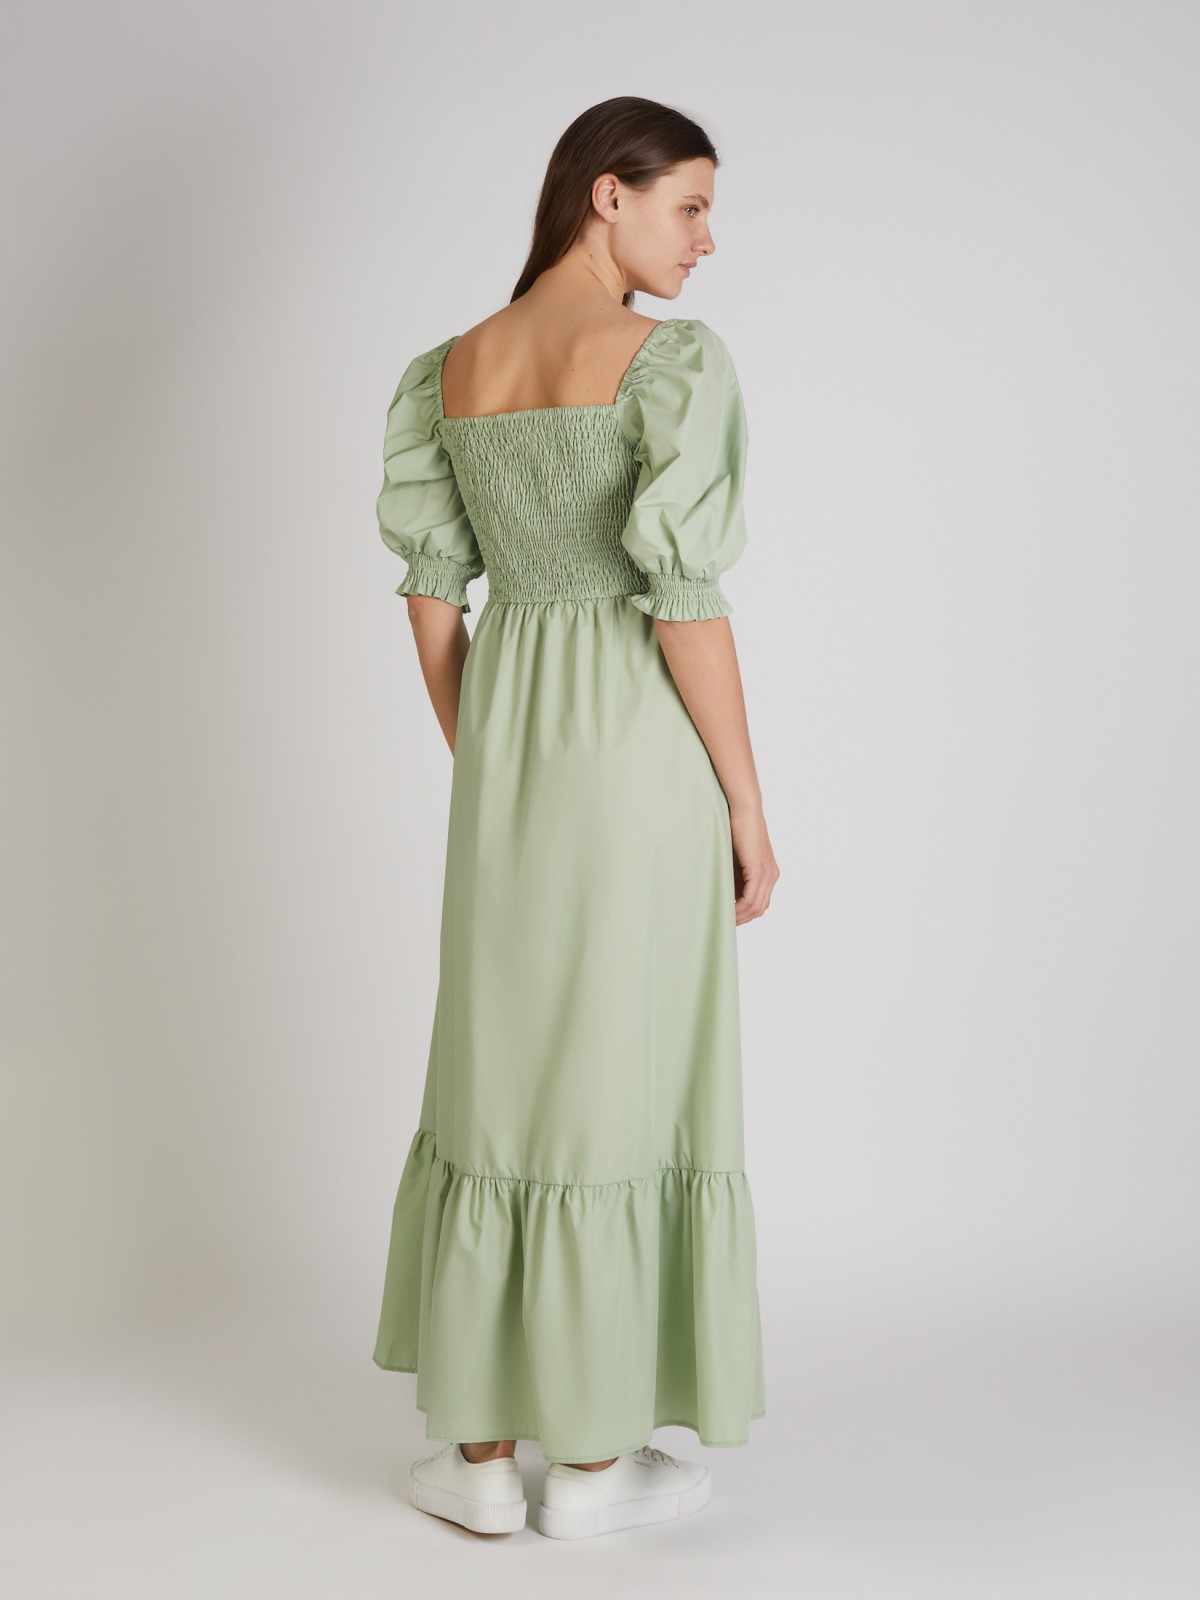 Платье zolla 022248262333, цвет светло-зеленый, размер XS - фото 4